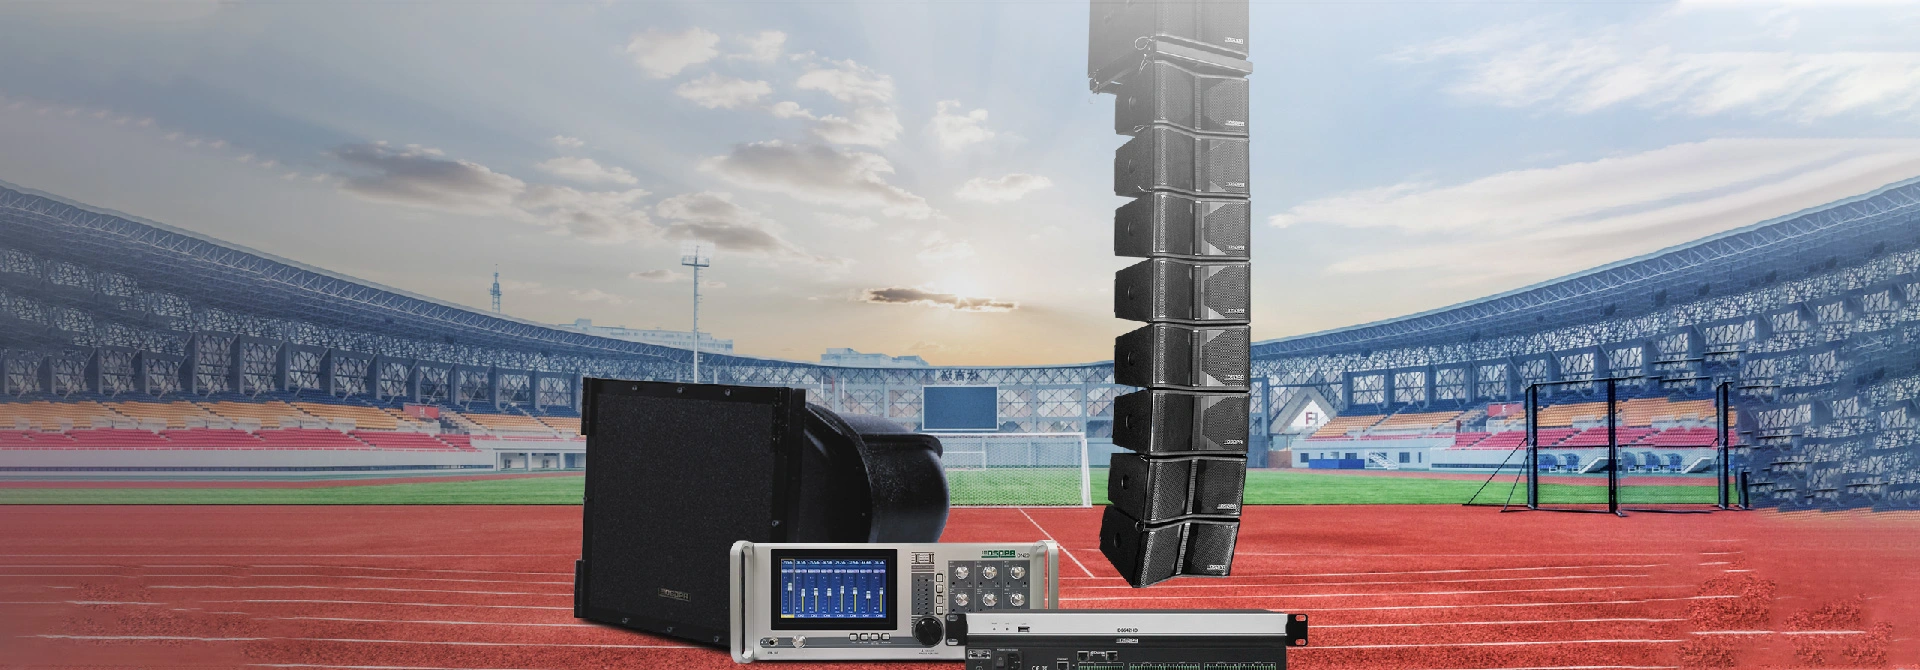 Solución de sistema de sonido profesional para estadios grandes al aire libre